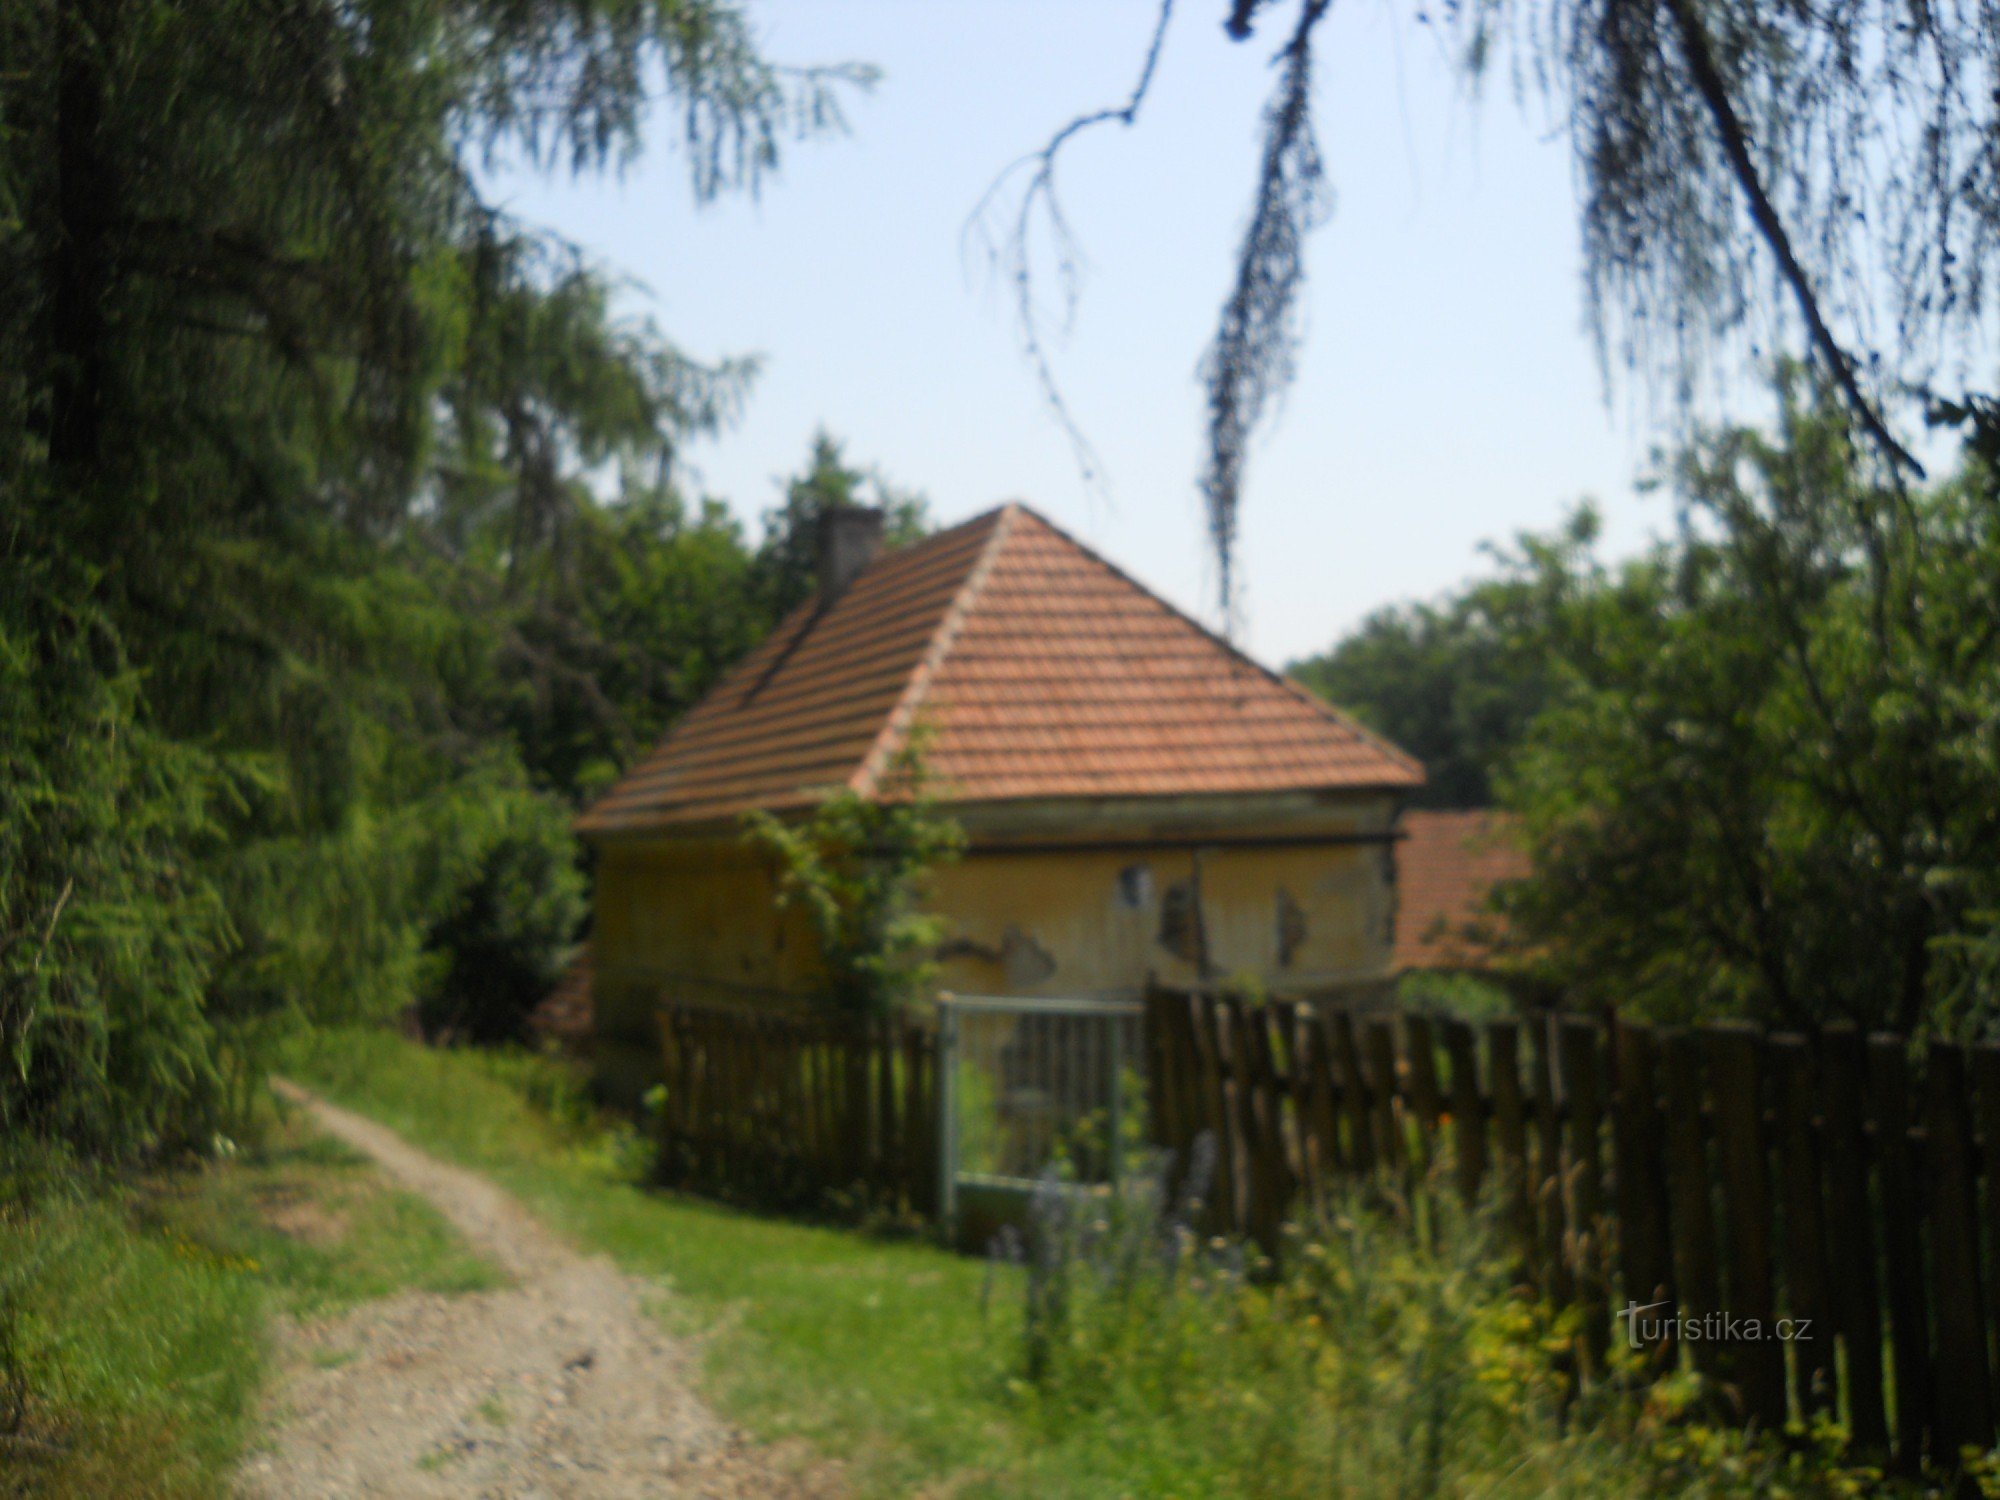 Da Unhoště a Unhoště attraverso otto mulini